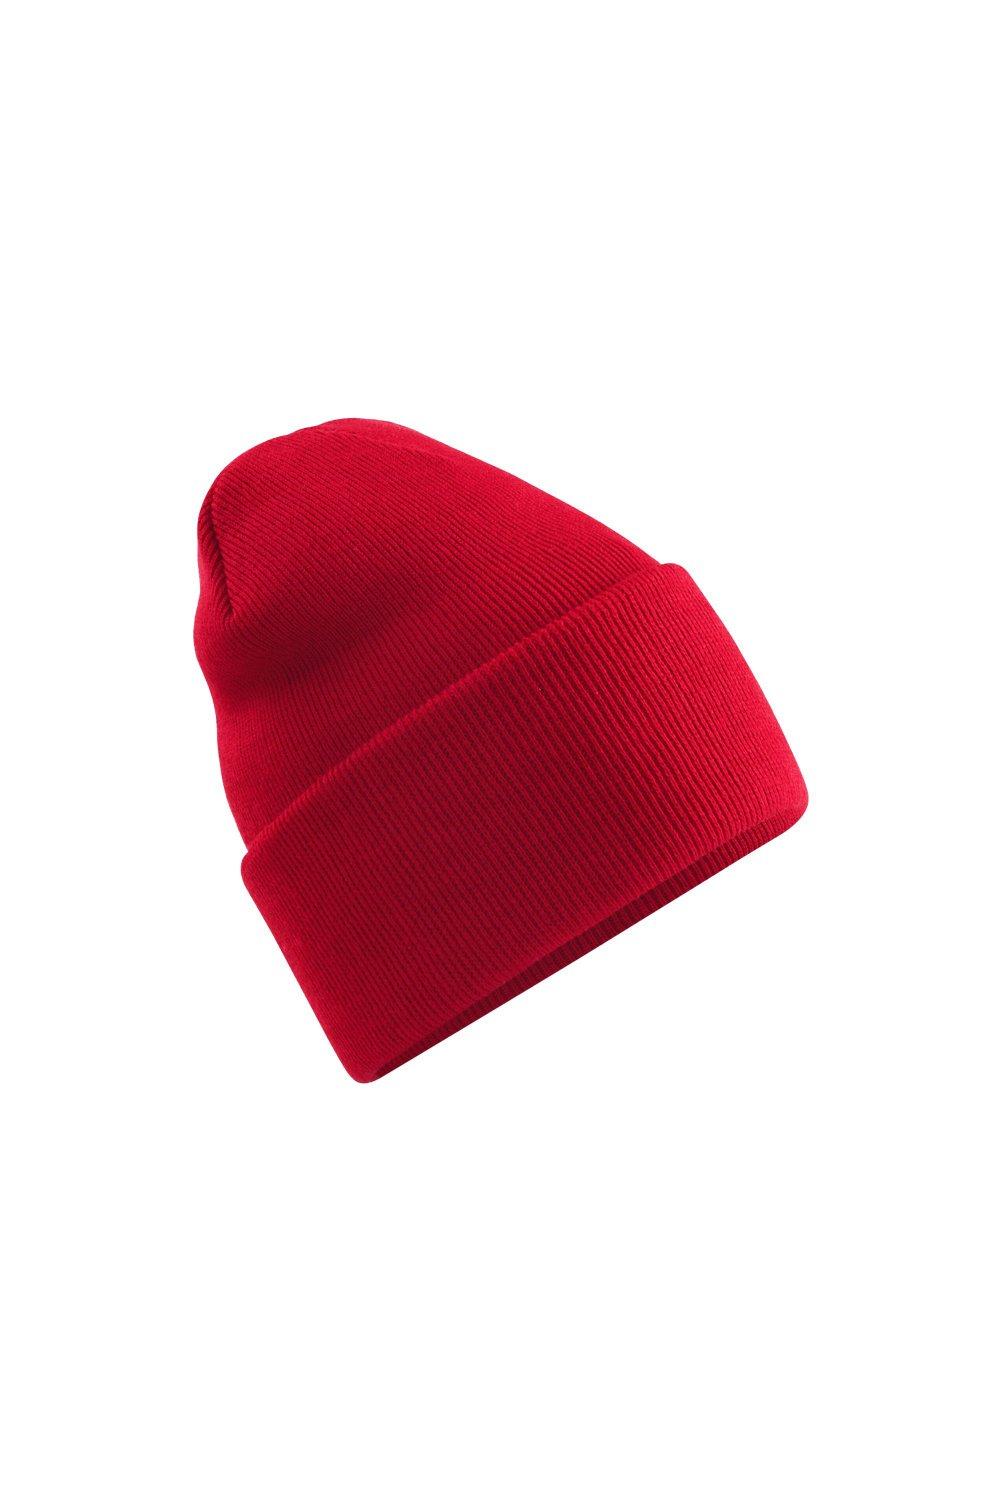 Оригинальная шапка с глубокими манжетами Beechfield, красный оригинальная зимняя шапка бини с манжетами beechfield красный